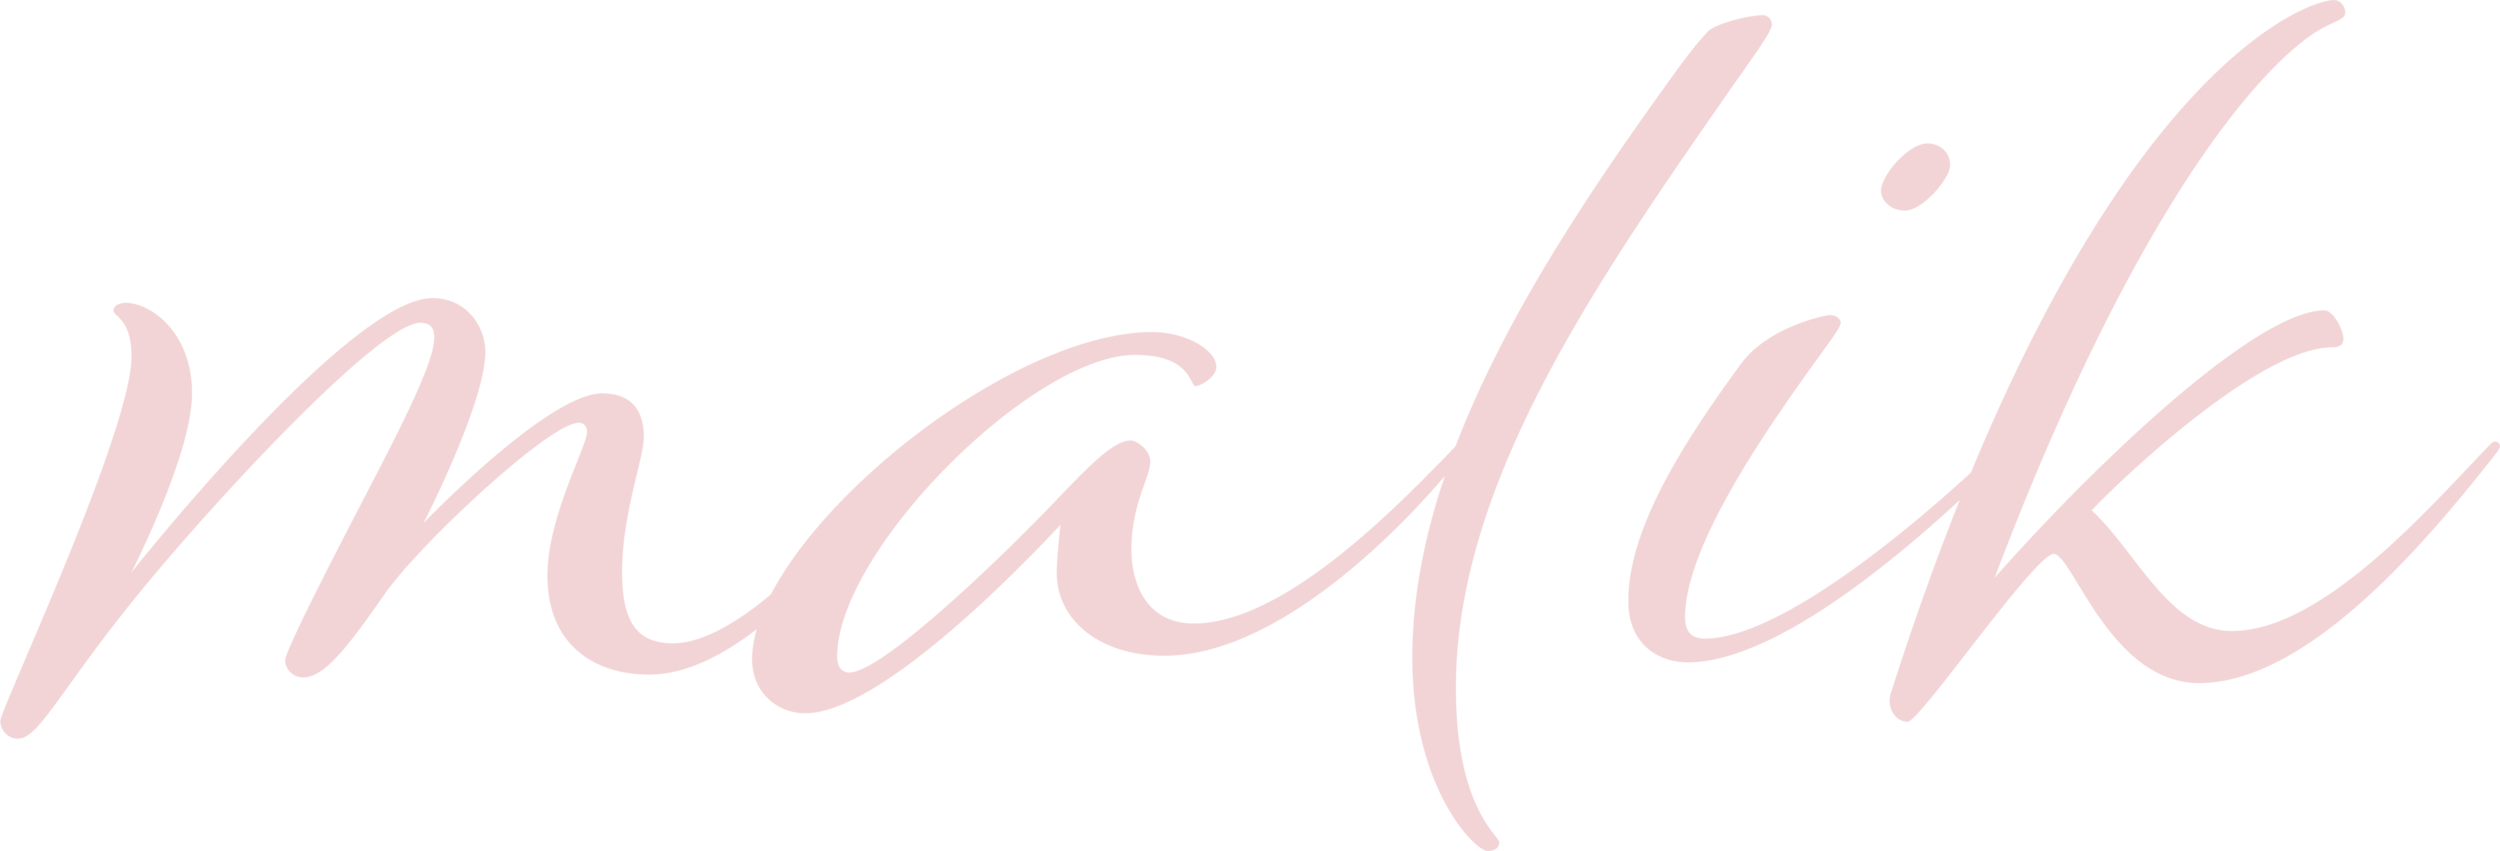 malik-logo.png